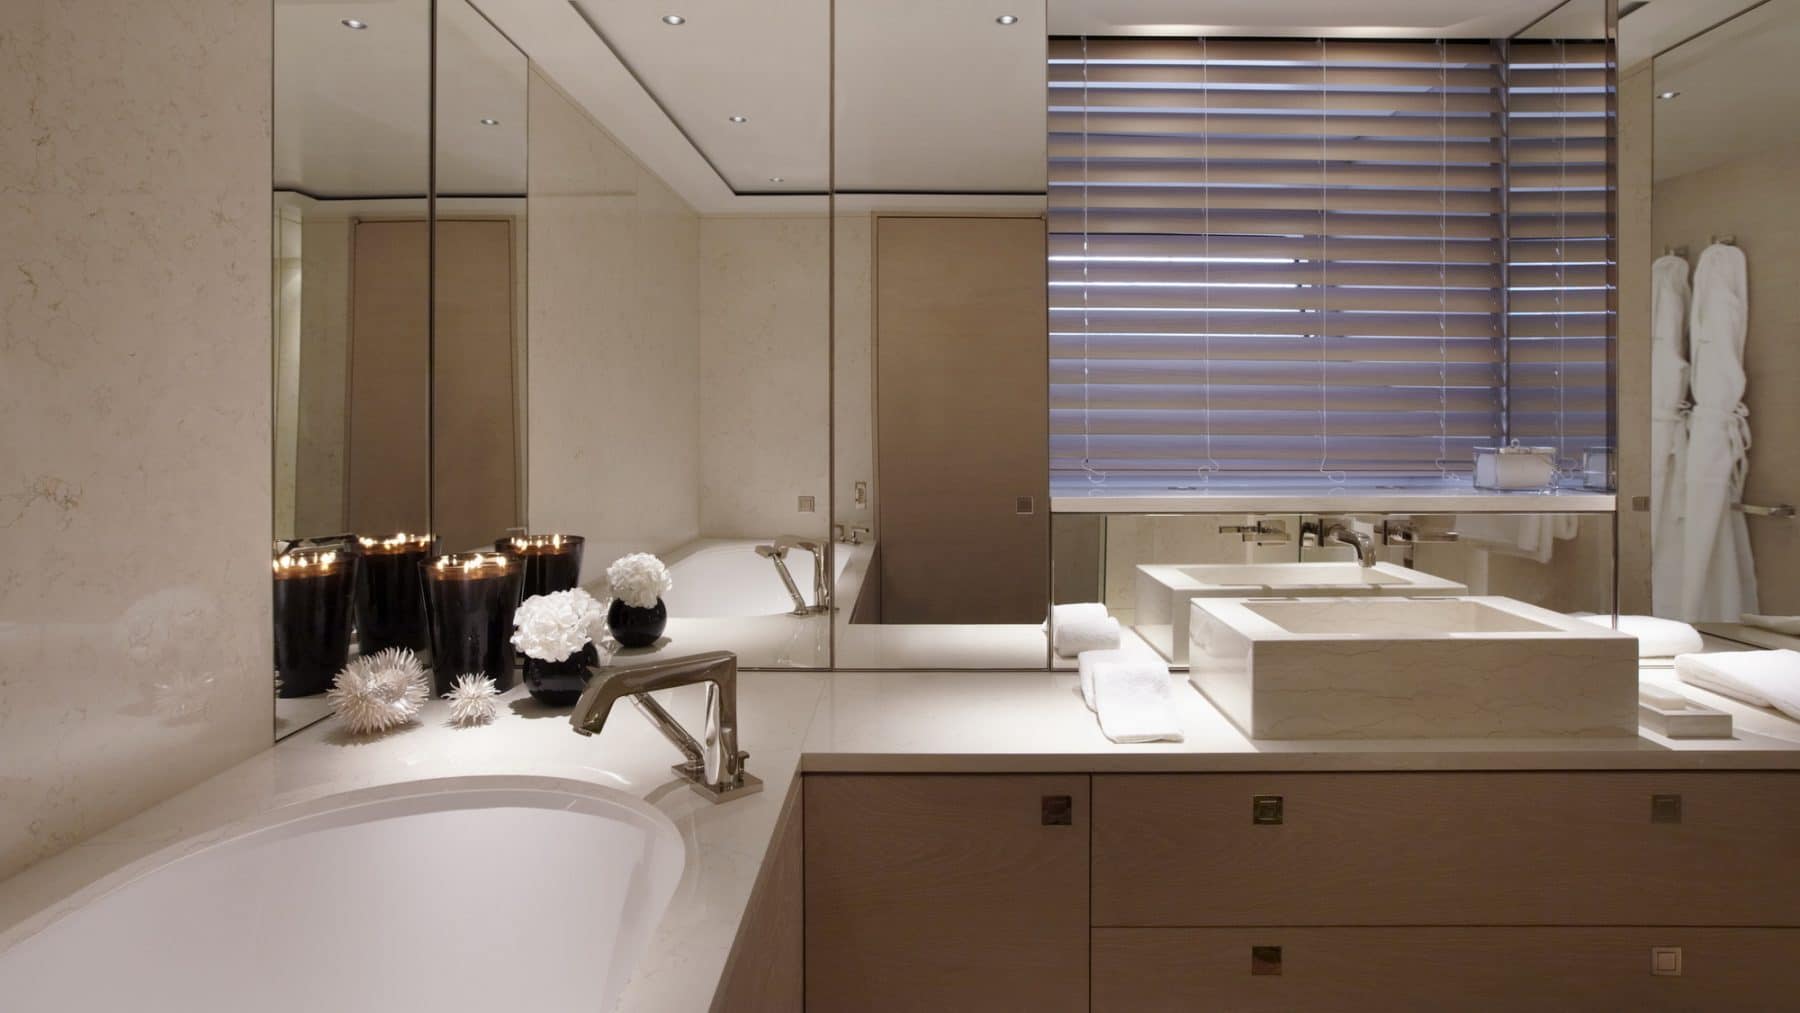 Het jacht heeft een luxe badkamer die van alle gemakken is voorzien, ook ontworpen door Malcolm McKeon. (Foto Royal Huisman)